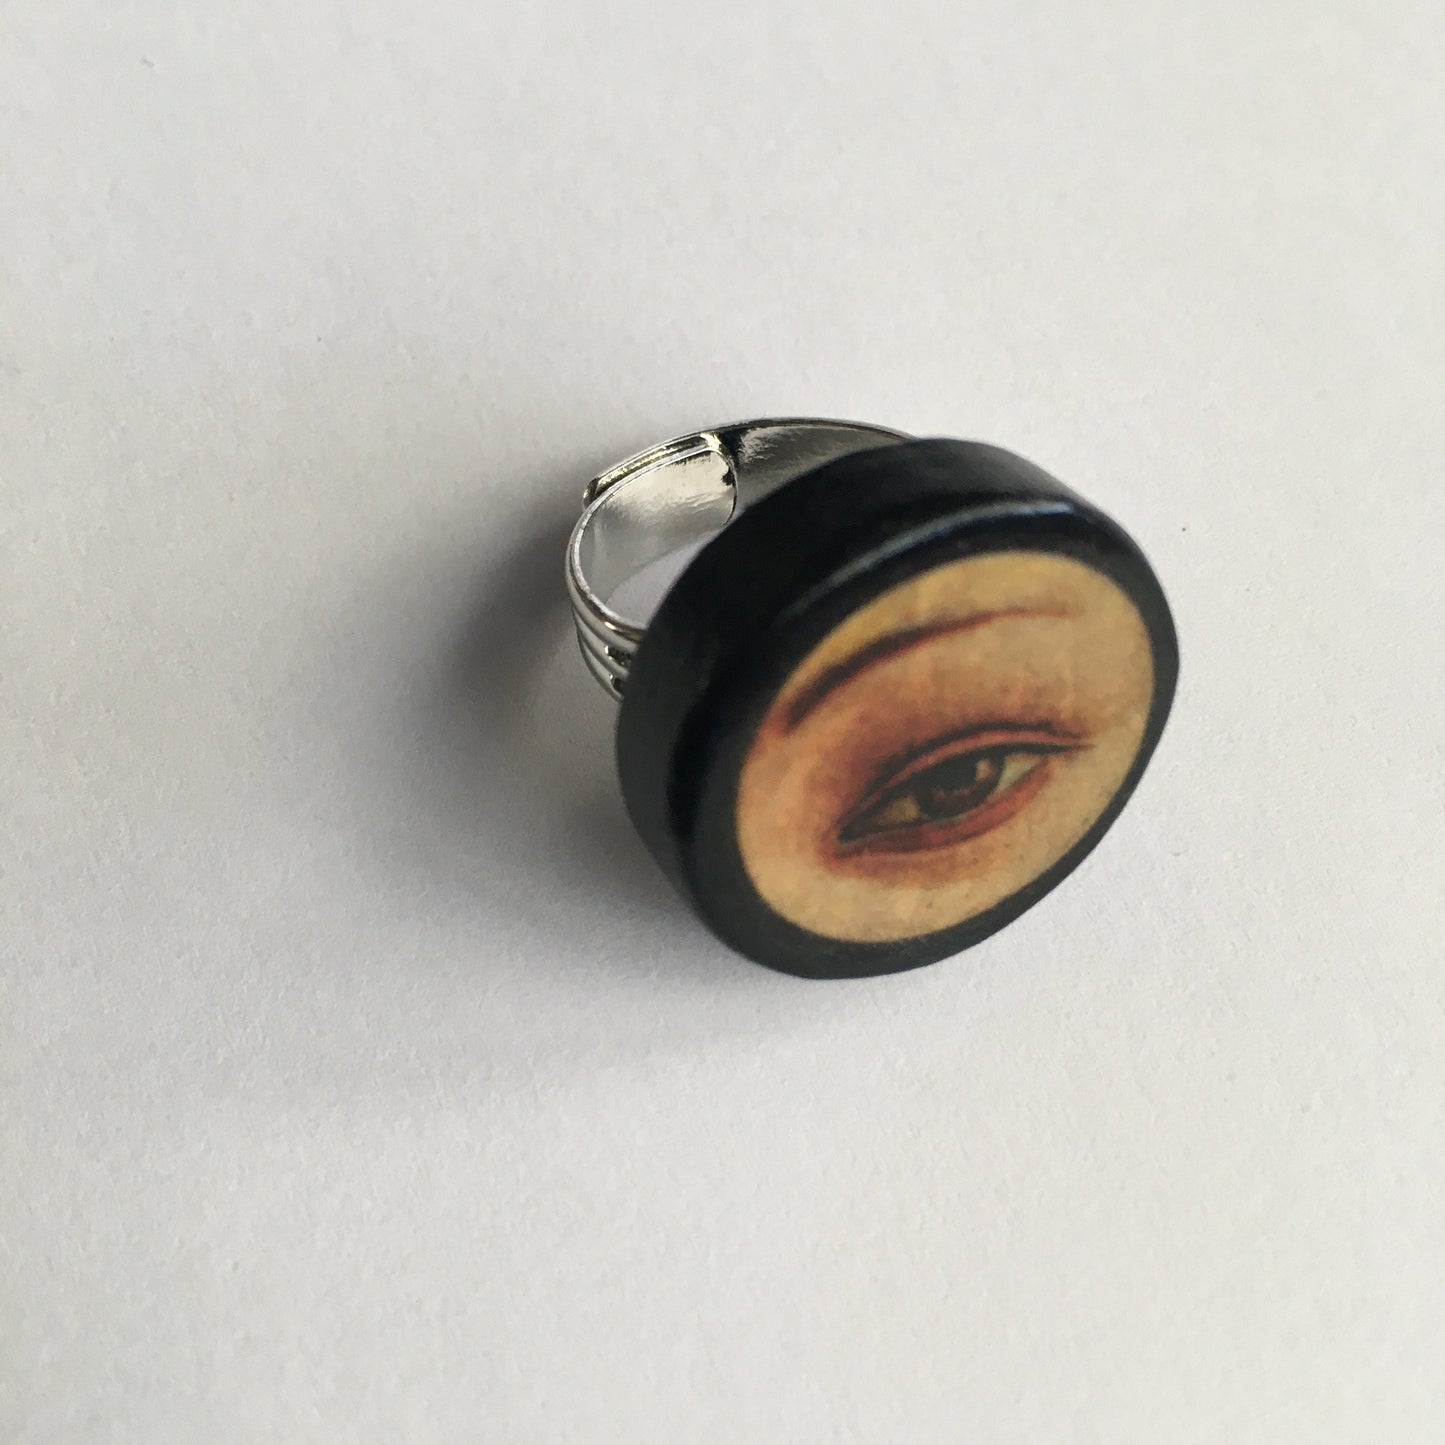 Lover’s eye, wooden ring. Botticelli art image ring. Eccentric gift.